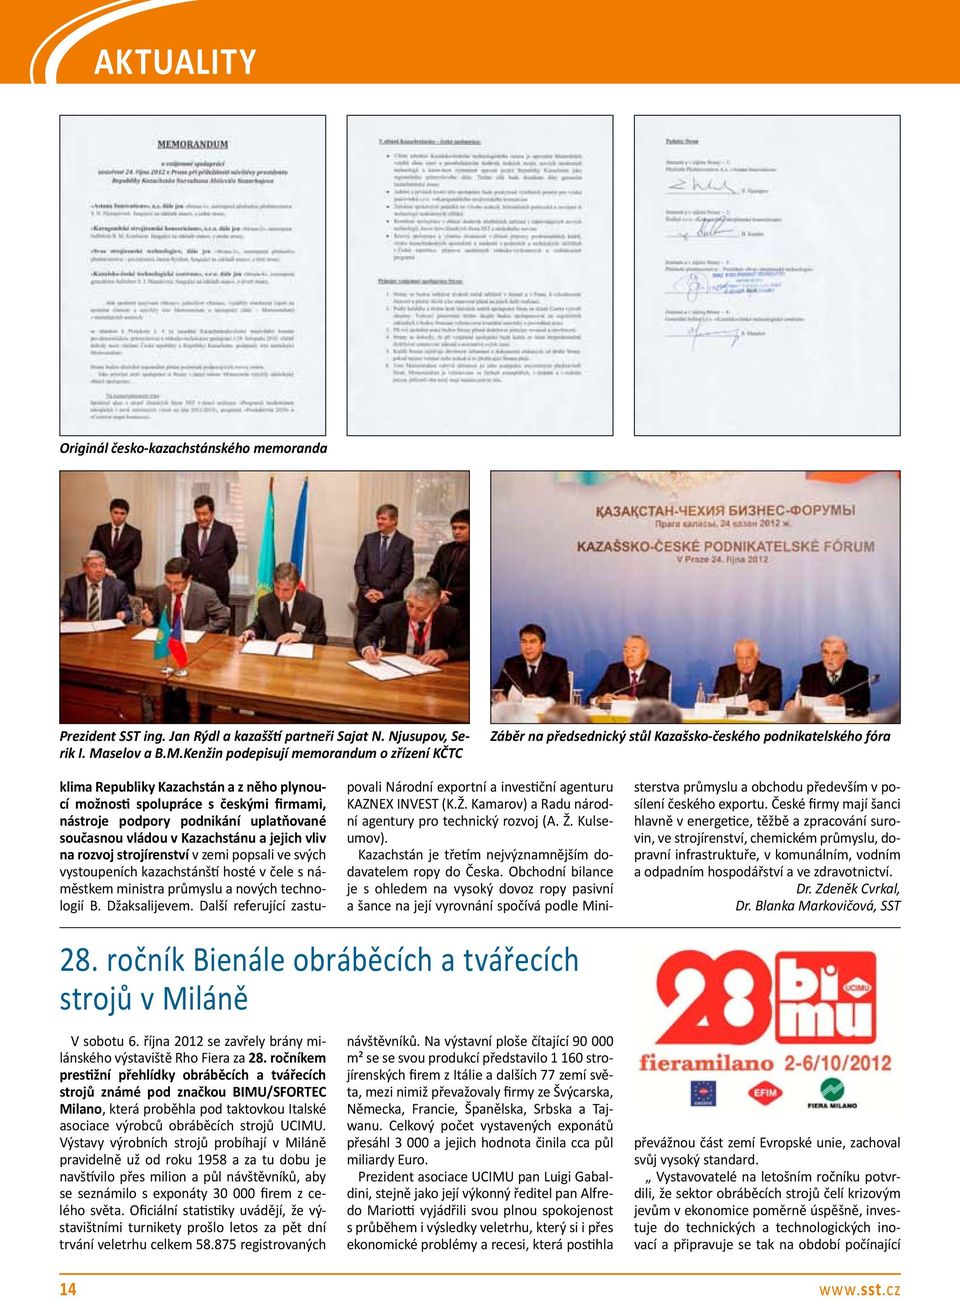 Kenžin podepisují memorandum o zřízení KČTC Záběr na předsednický stůl Kazašsko-českého podnikatelského fóra klima Republiky Kazachstán a z něho plynoucí možnosti spolupráce s českými firmami,